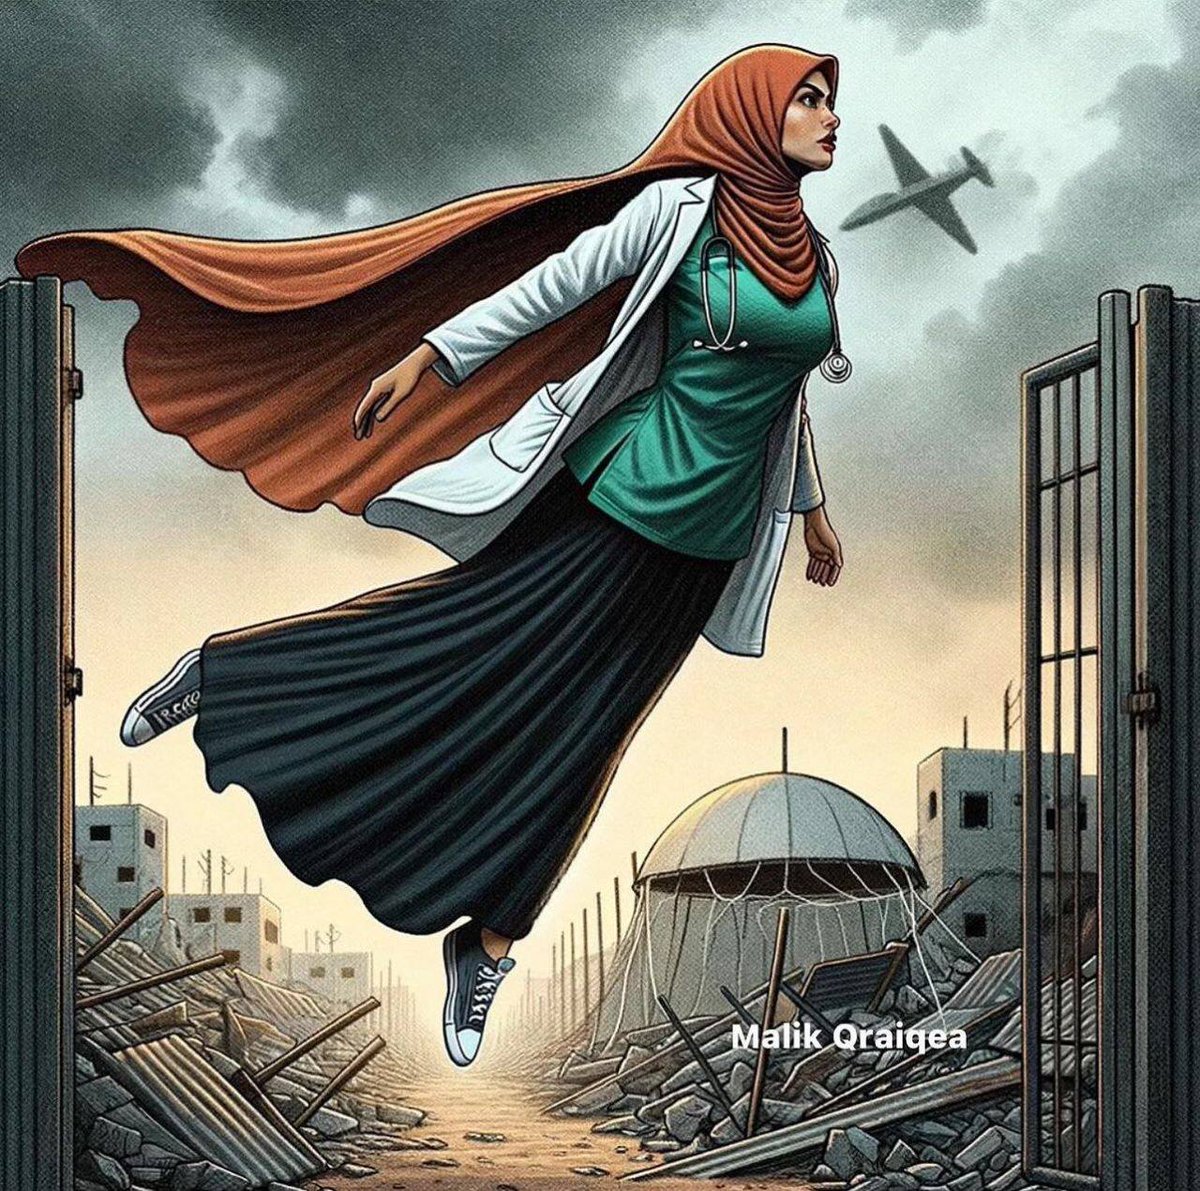 Han Yunus'taki Nasser Hastanesi avlusunda yaralı bir adamı kurtaran hemşire Amira Al-Assouli'nin cesareti onuruna karikatürler.

'Mısır, Refah, Gaza Genocide,  Filistin, Sağlık Çalışanları, Namaz, Adnan Oktar, TİP'e Kenan İmirzalıoğlu, Osmanlı, Gazze, #GazzeDirenişi #Sisi #Yemen